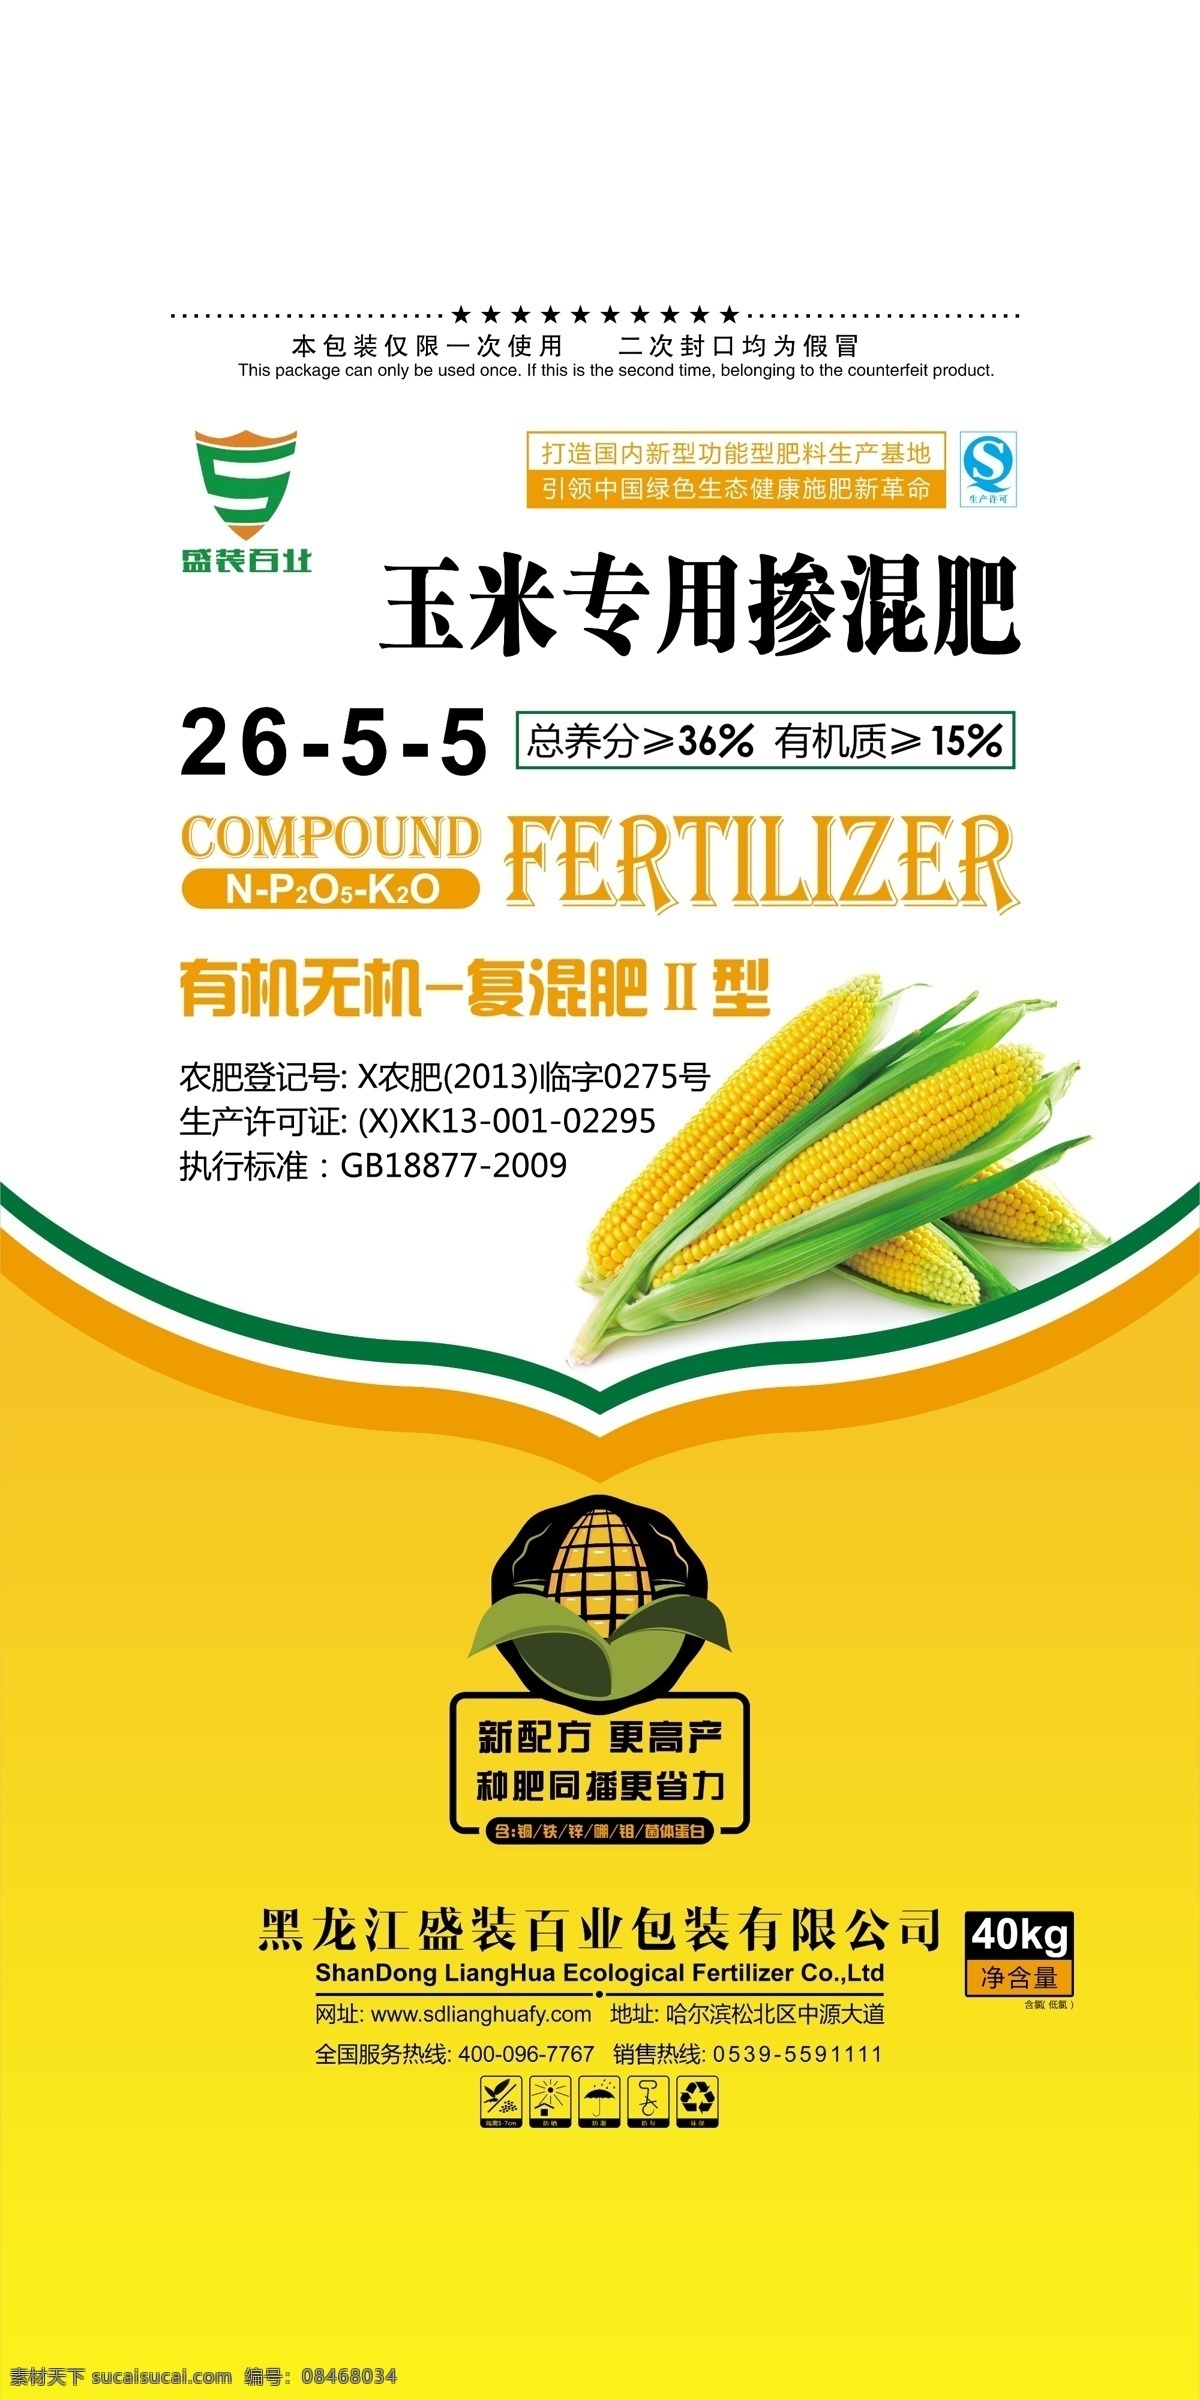 玉米 专用 掺混 肥 掺混肥料 化肥 包装 大豆 肥料包装 包装设计